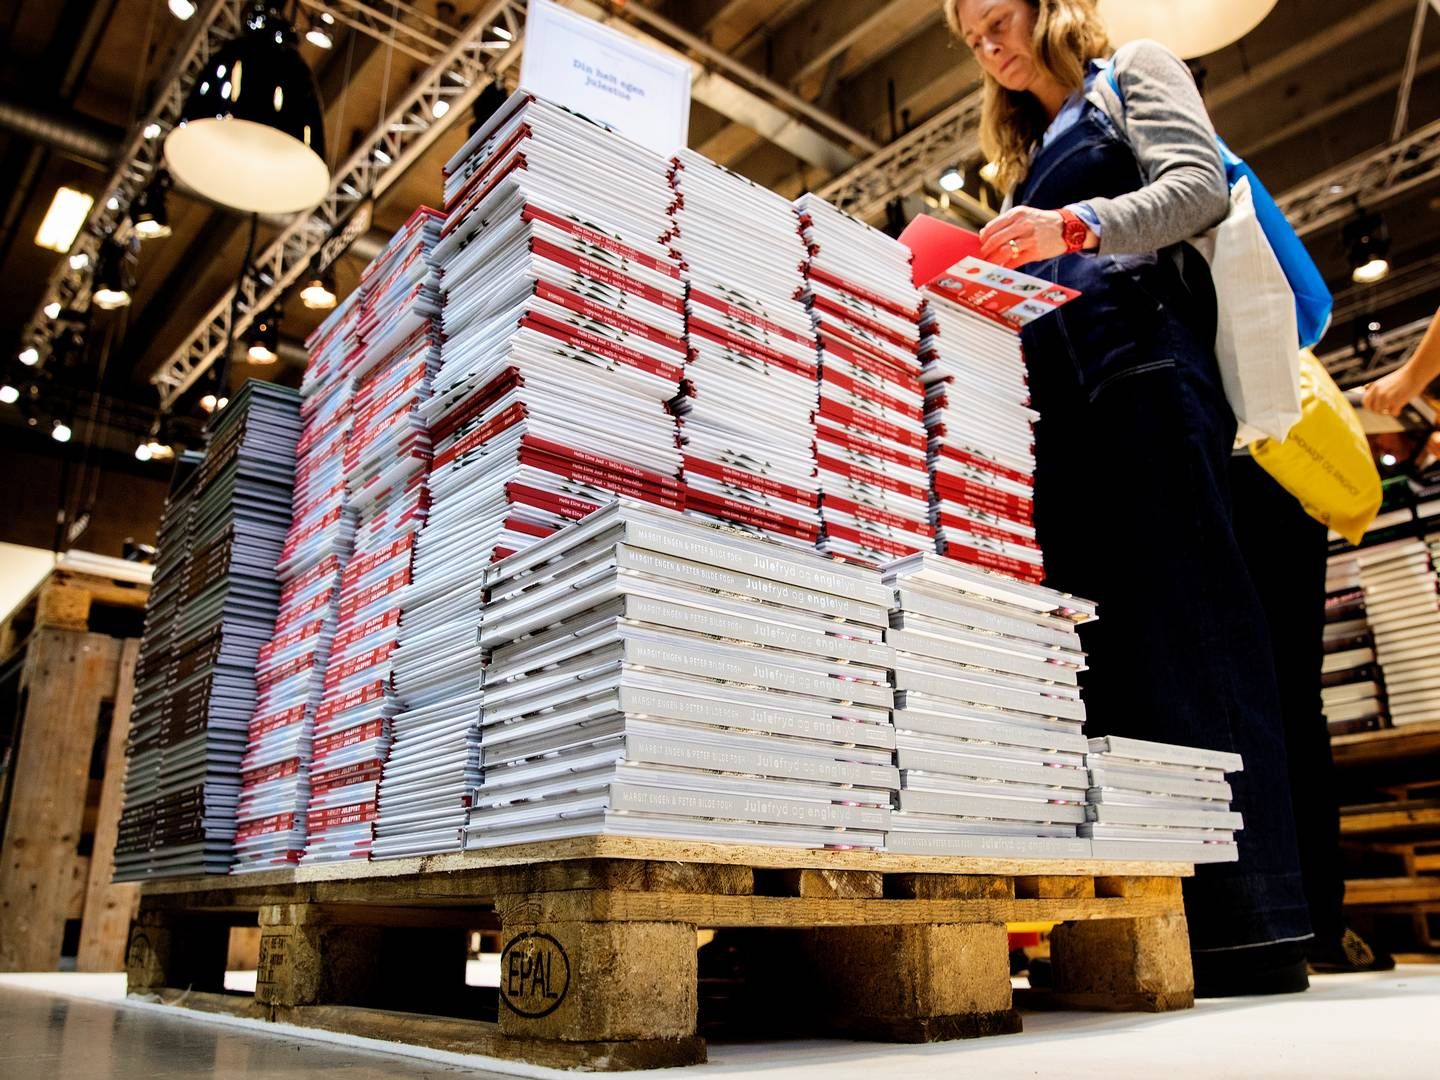 Svenske Hoi Publishing, der har købt op i Danmark, har nu fået ny kapital ved en aktieemission.